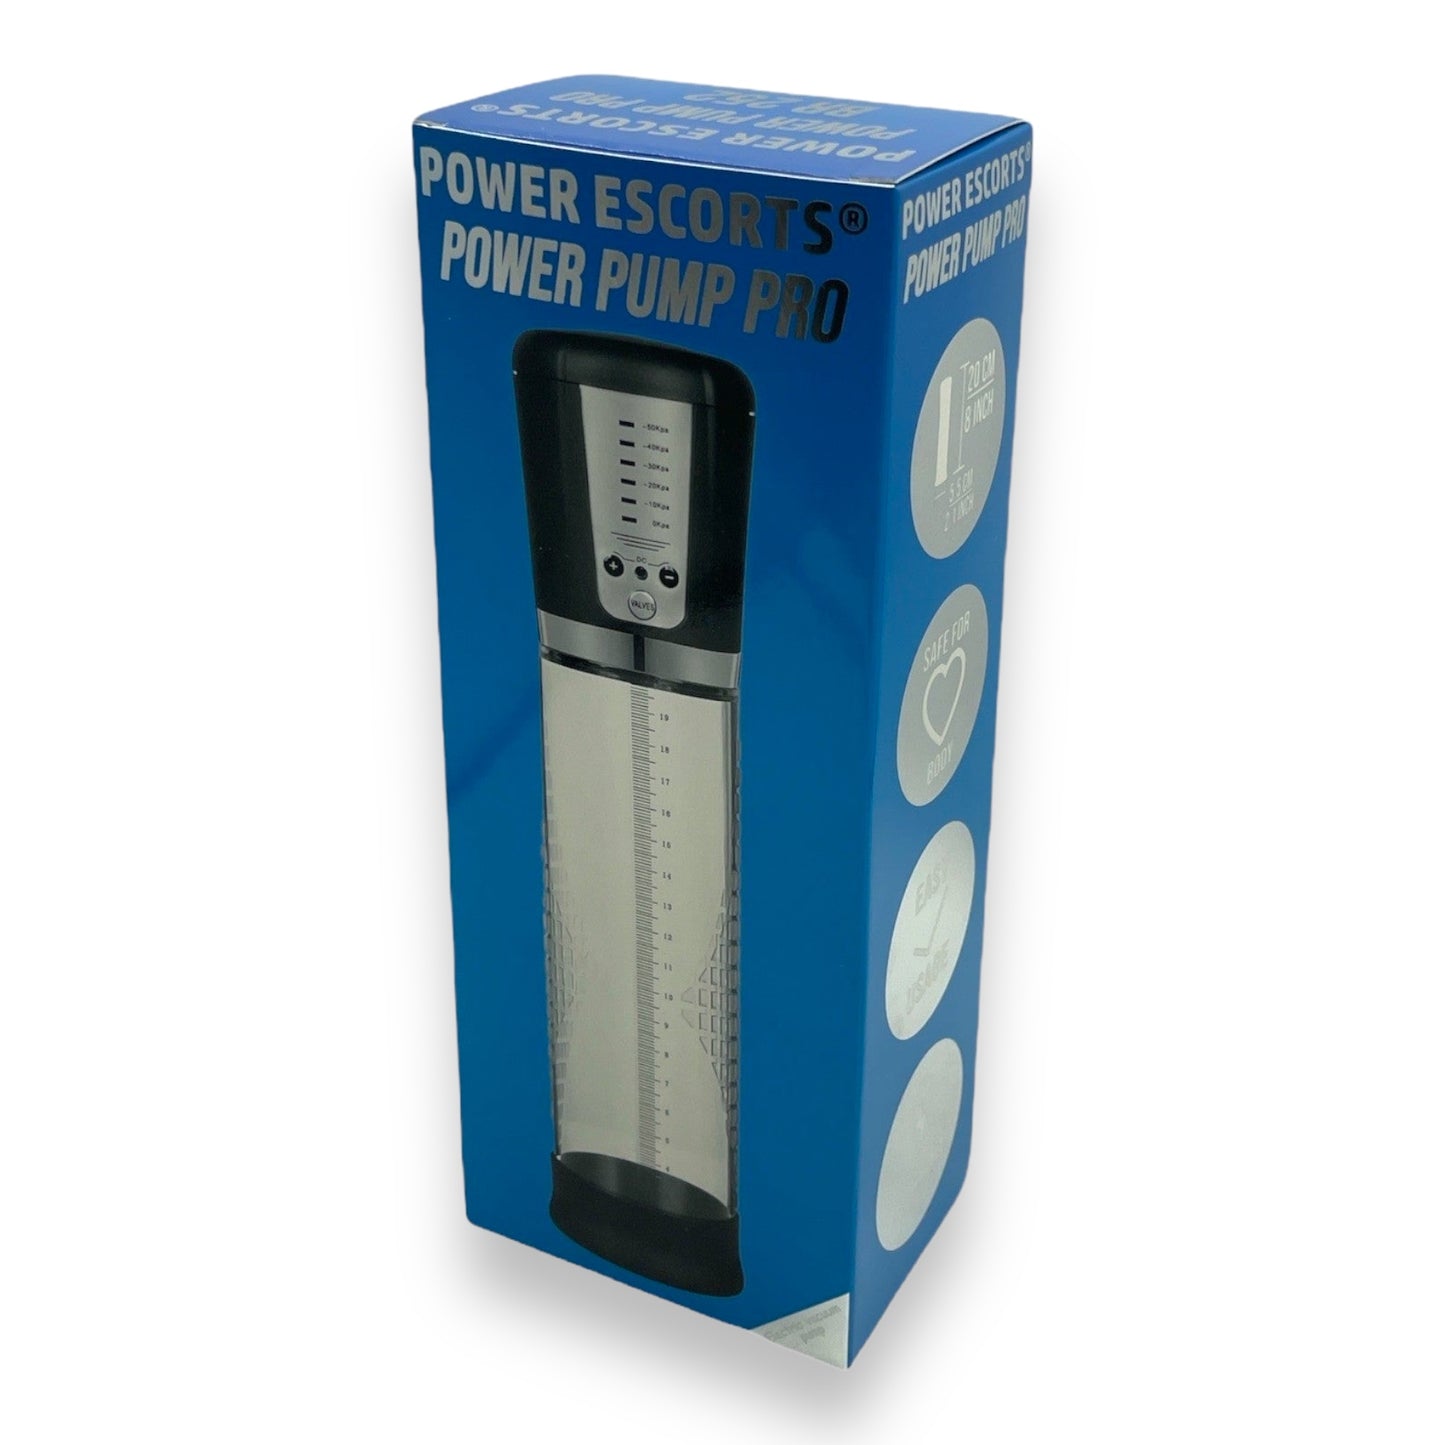 Power Escorts - BR252 - Power Pump Pro - Automatic Penis Pump - Rechargeable